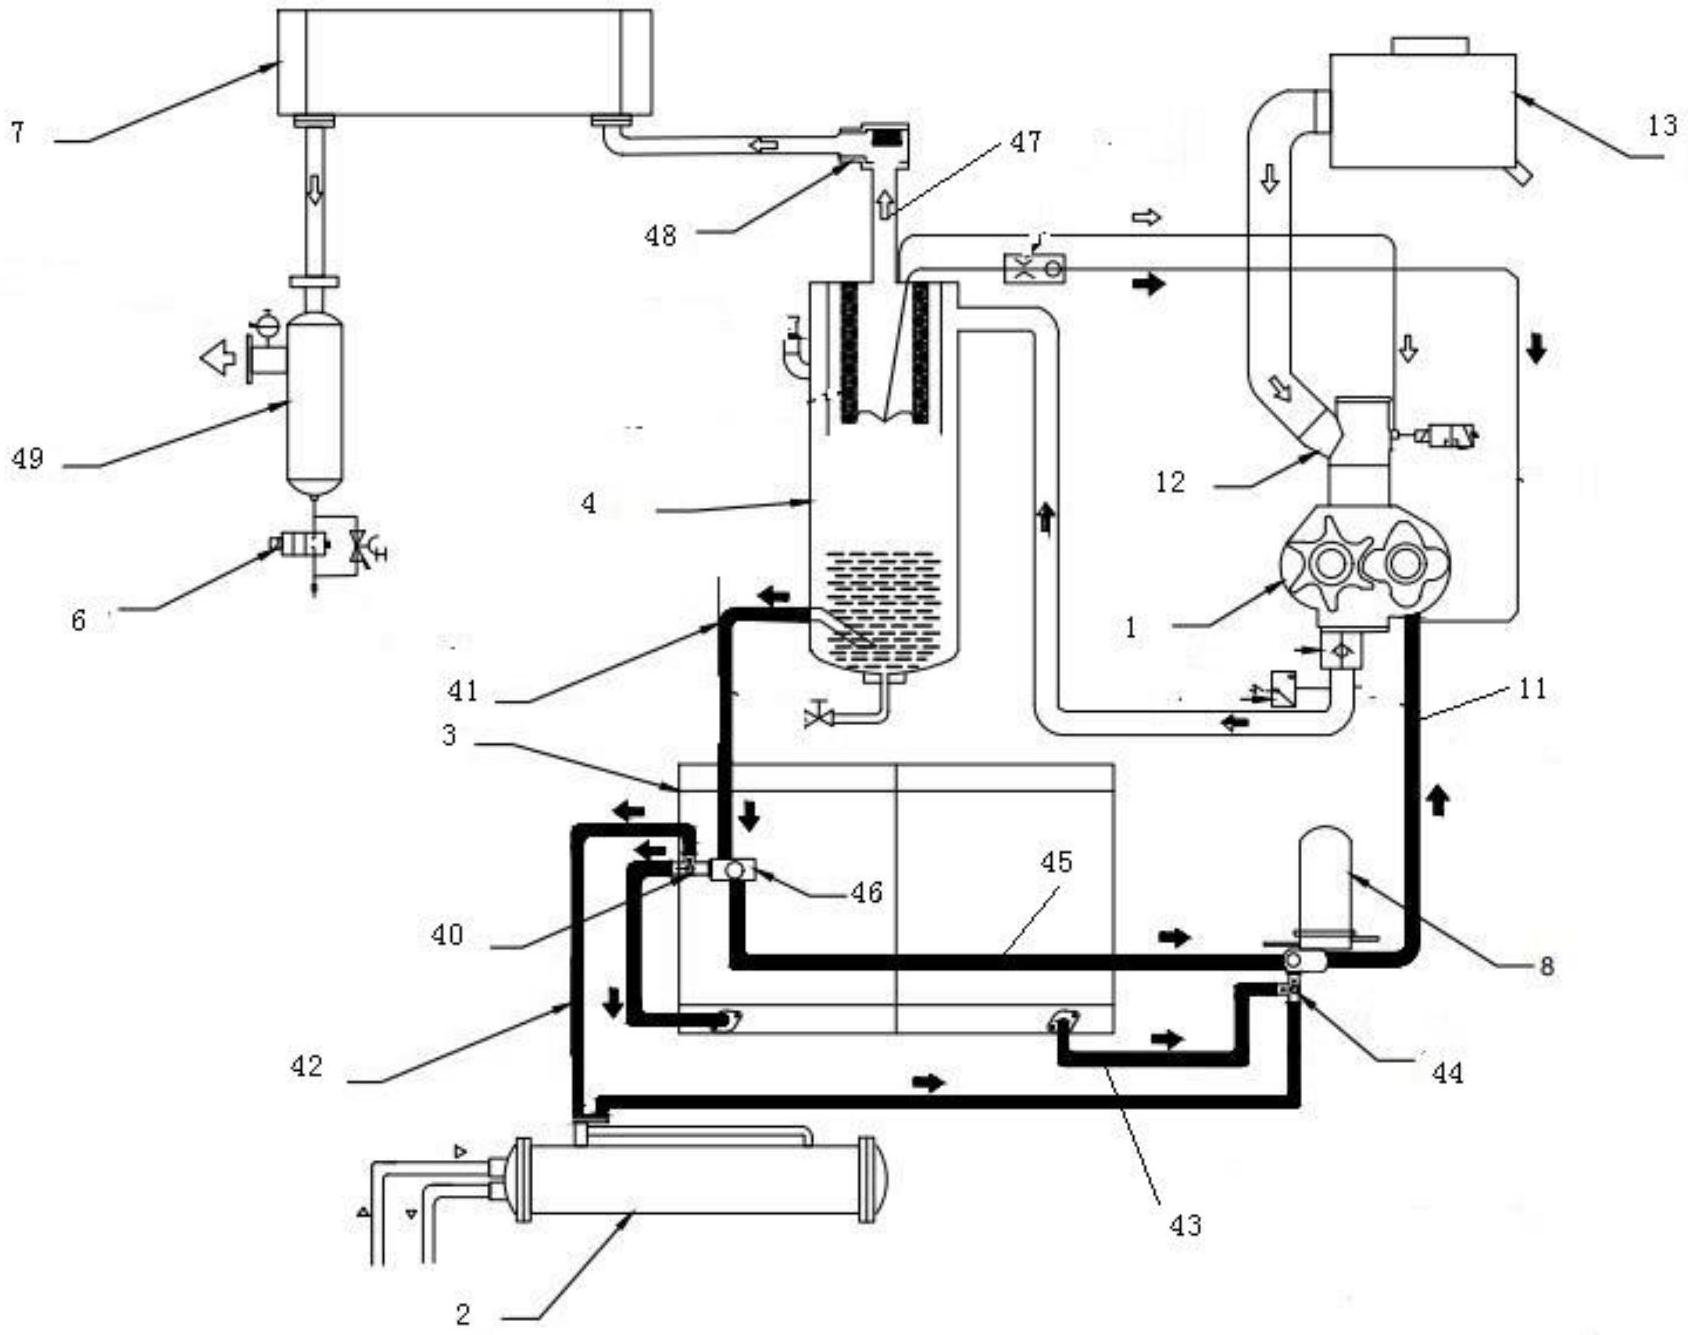 英格索兰空压机结构图图片